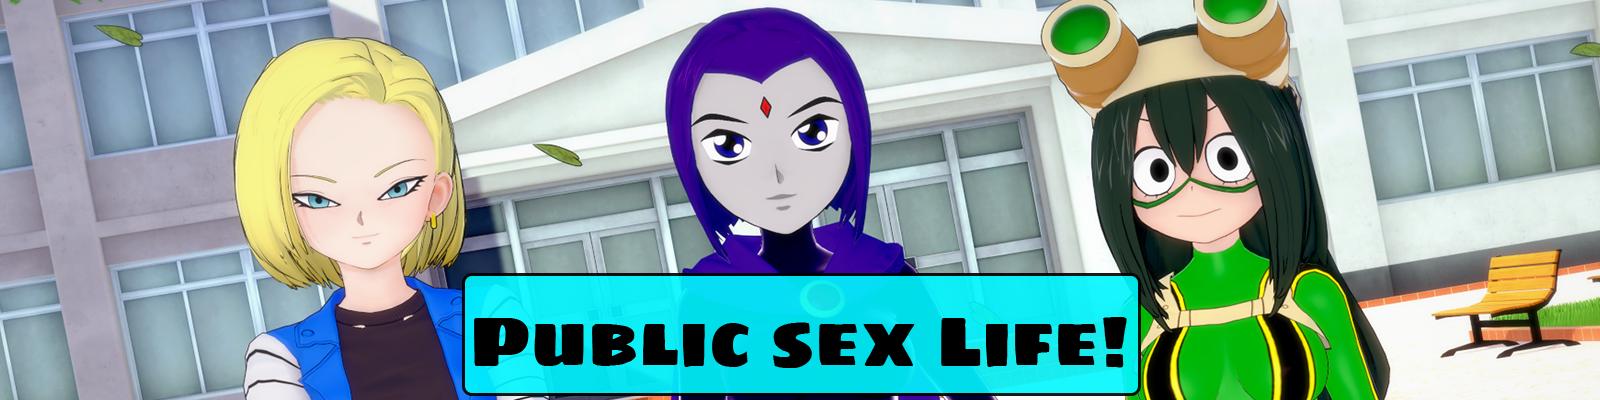 ParadiceZone - Public Sex Life Version 0.15 Porn Game